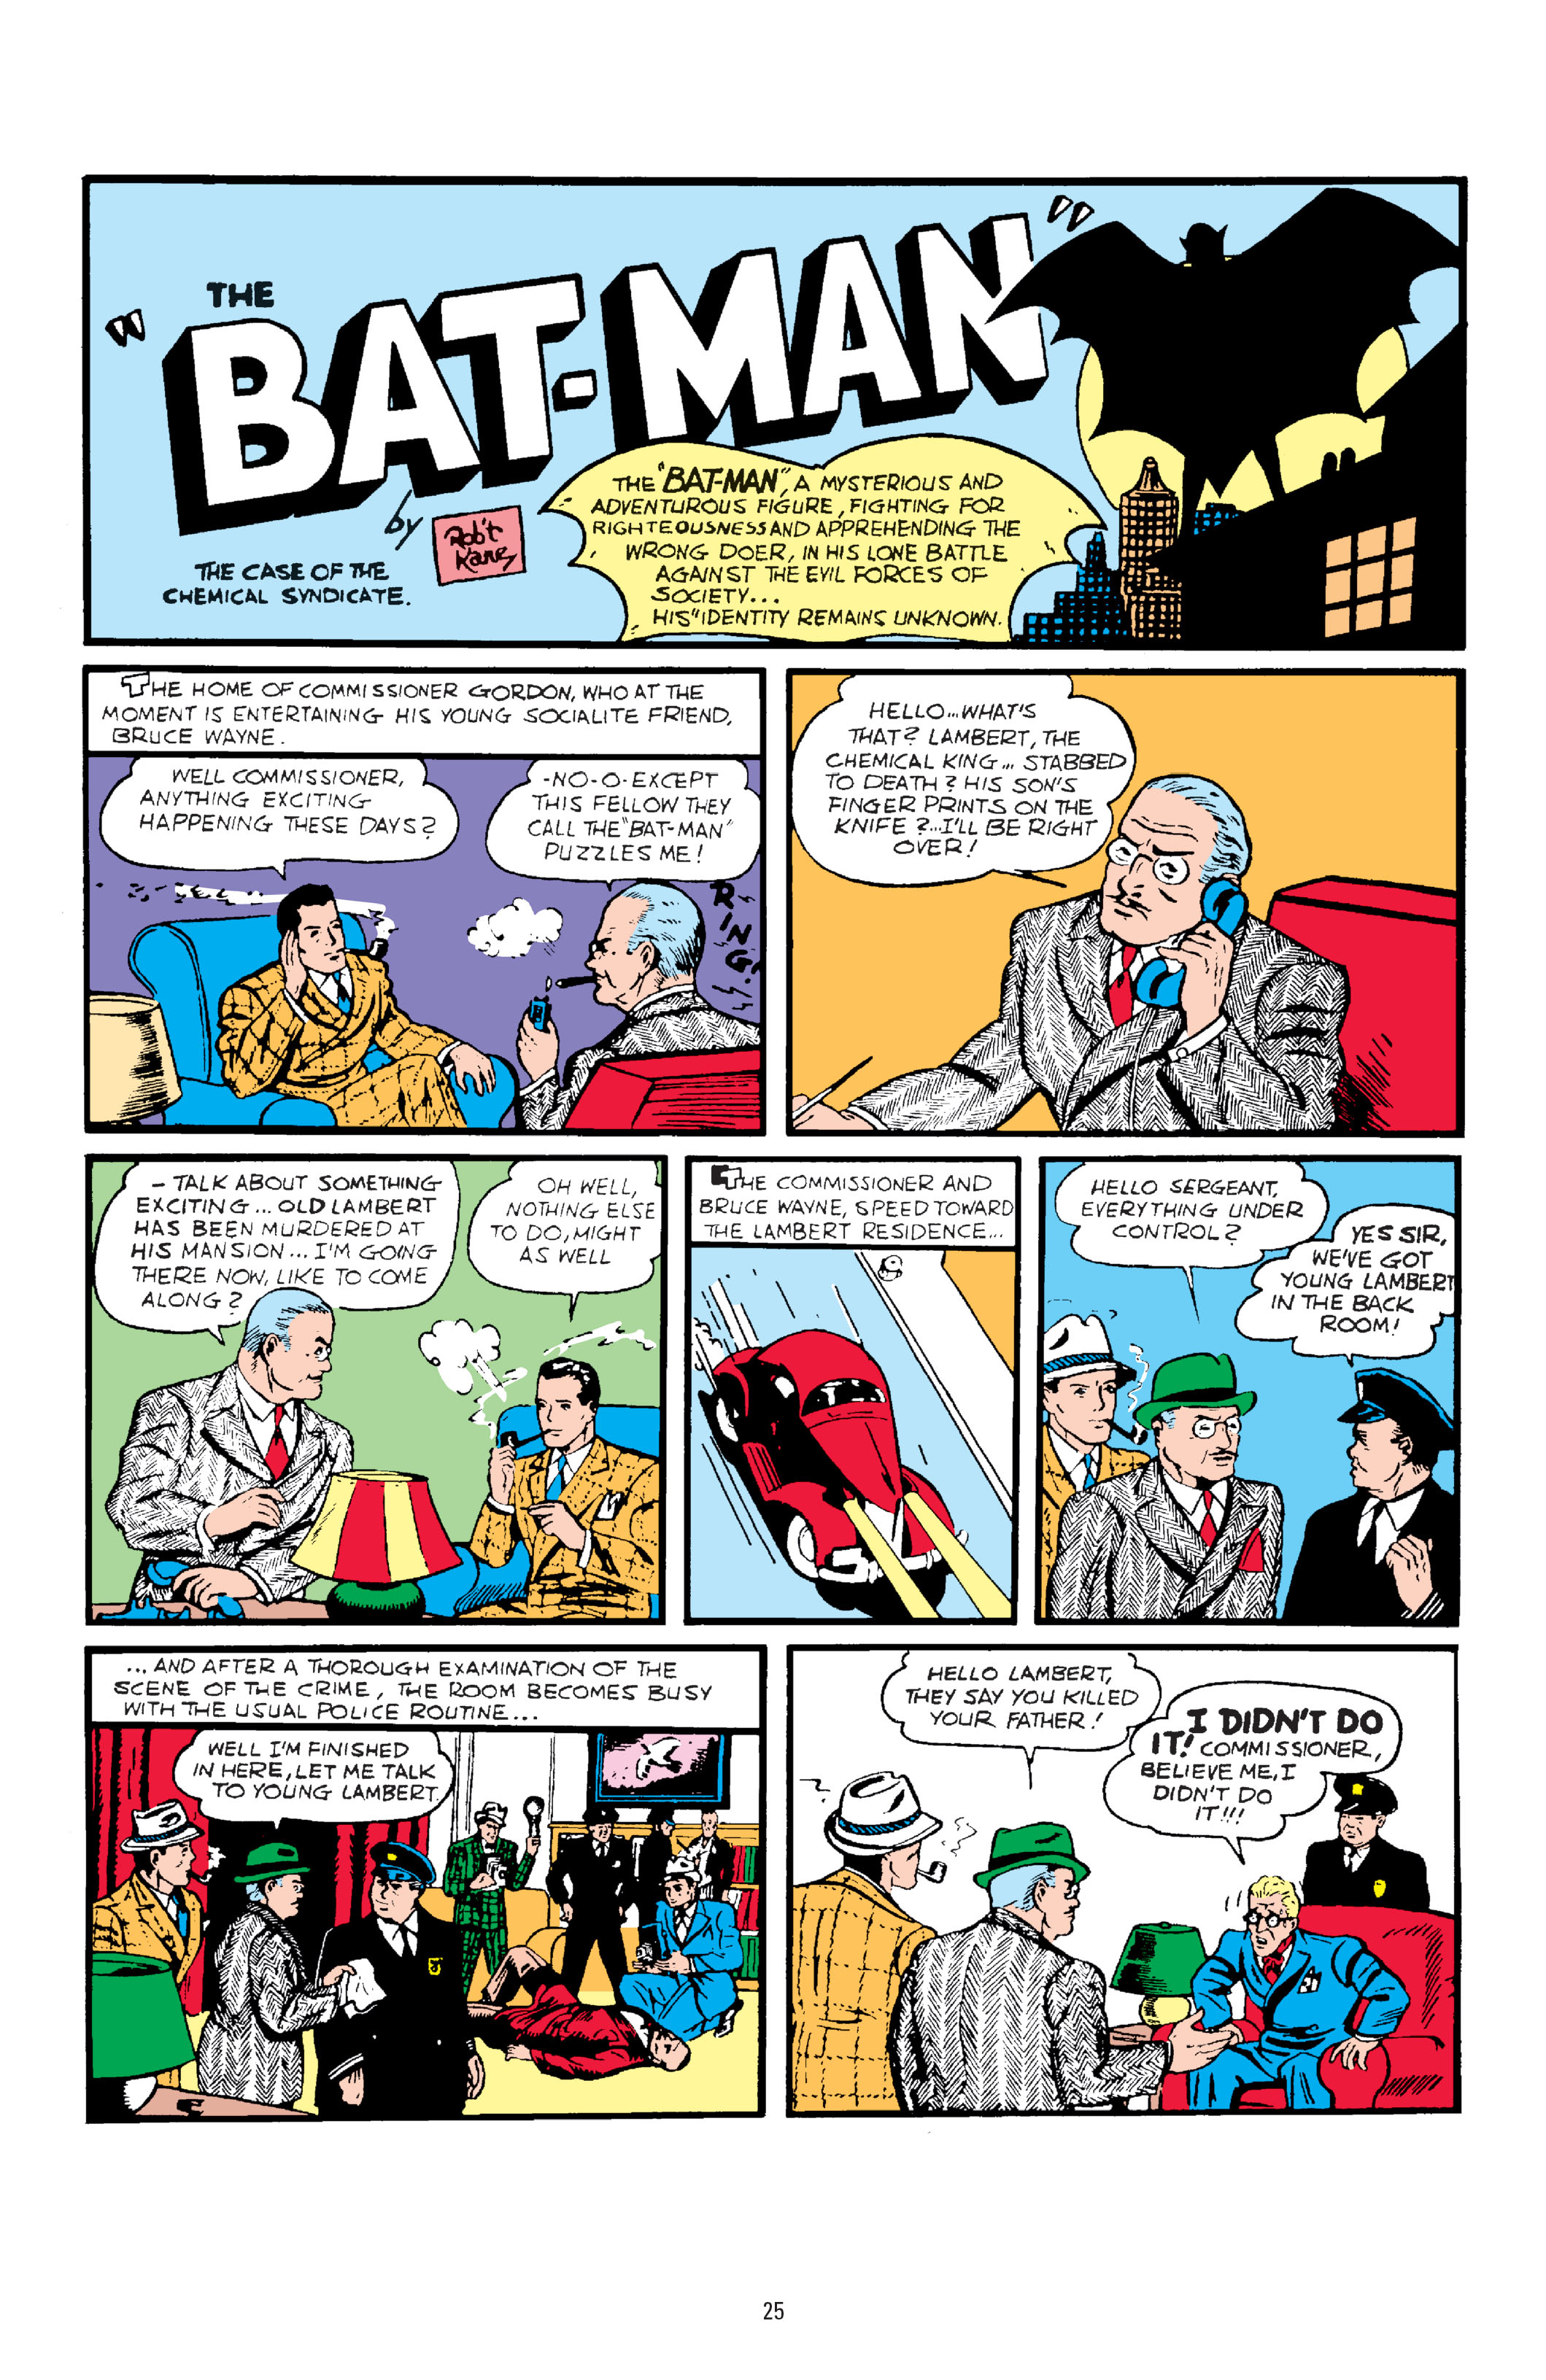 Hello everything. Detective Comics #27 (1939). Комиксы на английском. Иностранный язык в комиксах. Популярные английские комиксы.